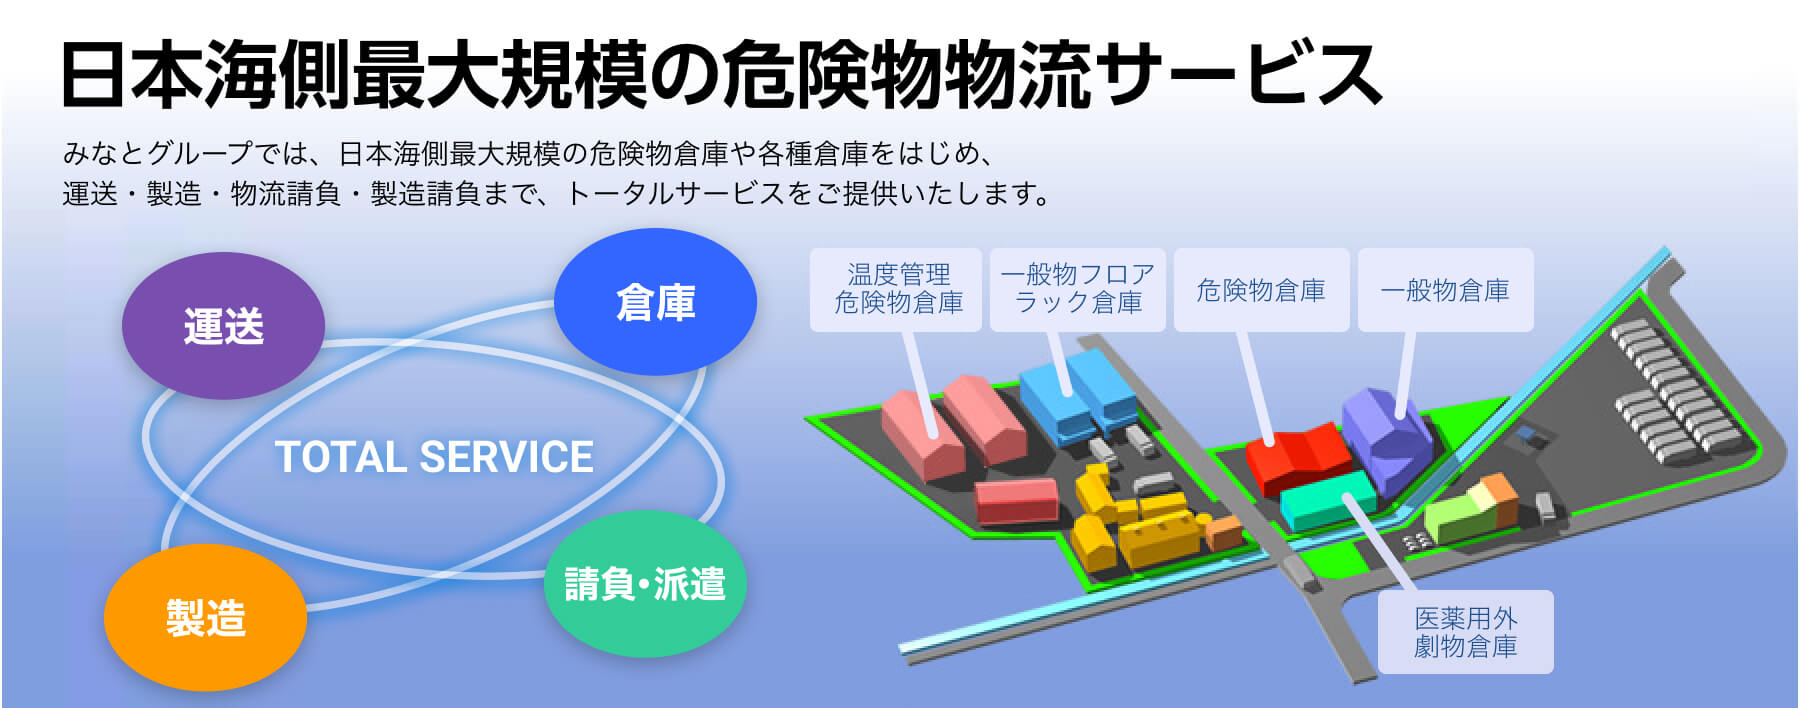 日本海側最大規模の危険物流サービス